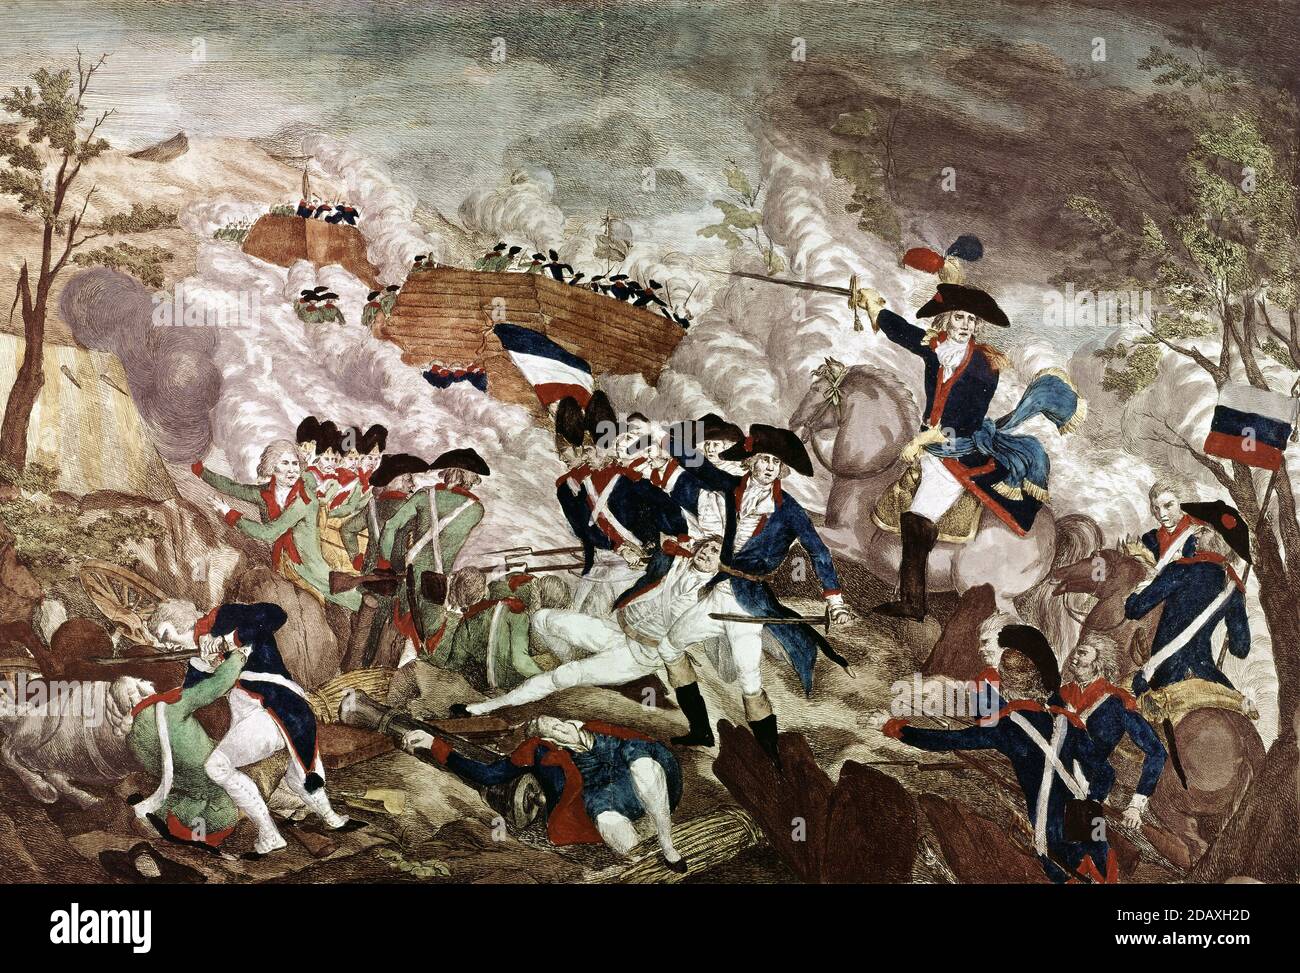 La batalla de Jemmapes, 6 de noviembre de 1792 - Bataille de Jemappes Foto de stock